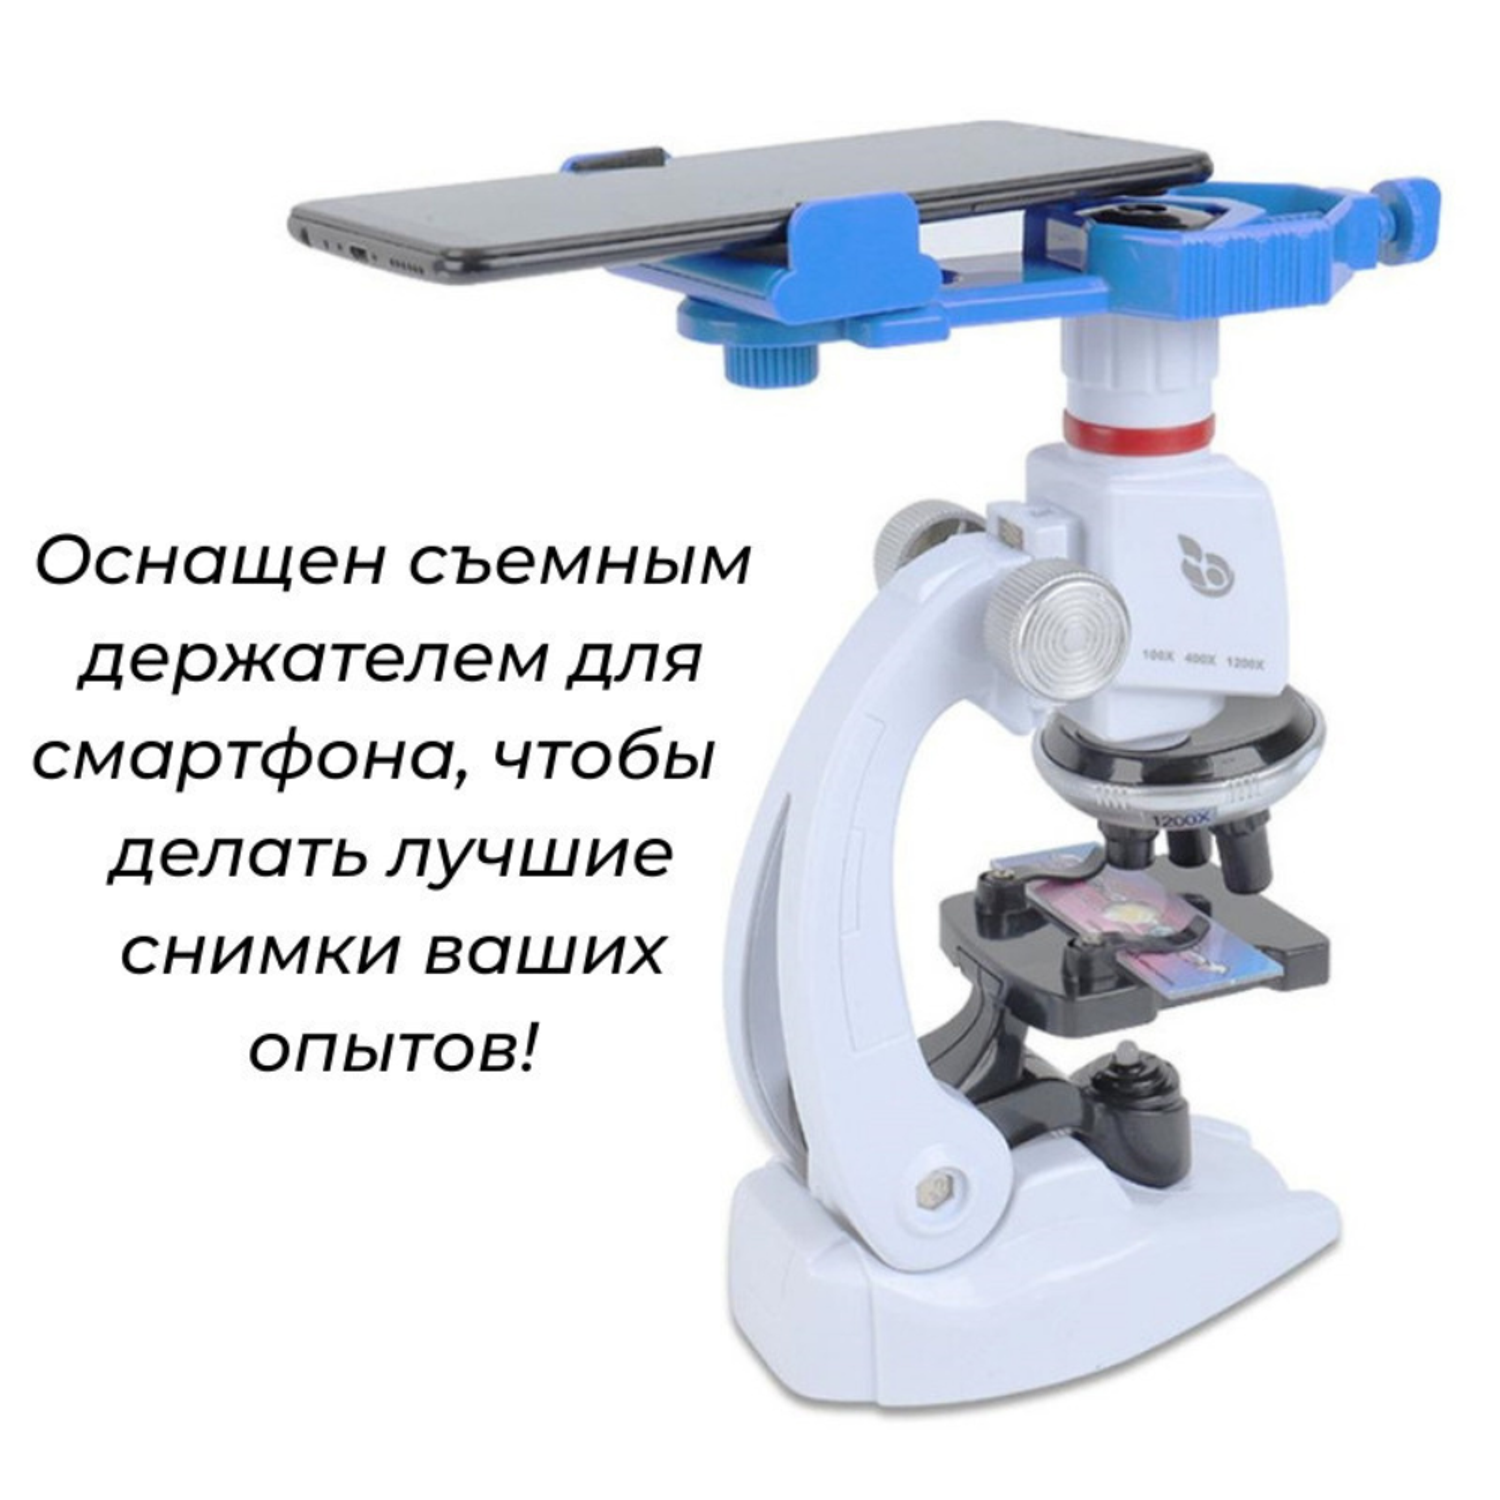 Детский микроскоп MagicStyle набор для опытов с держателем для смартфона и подсветкой - фото 4